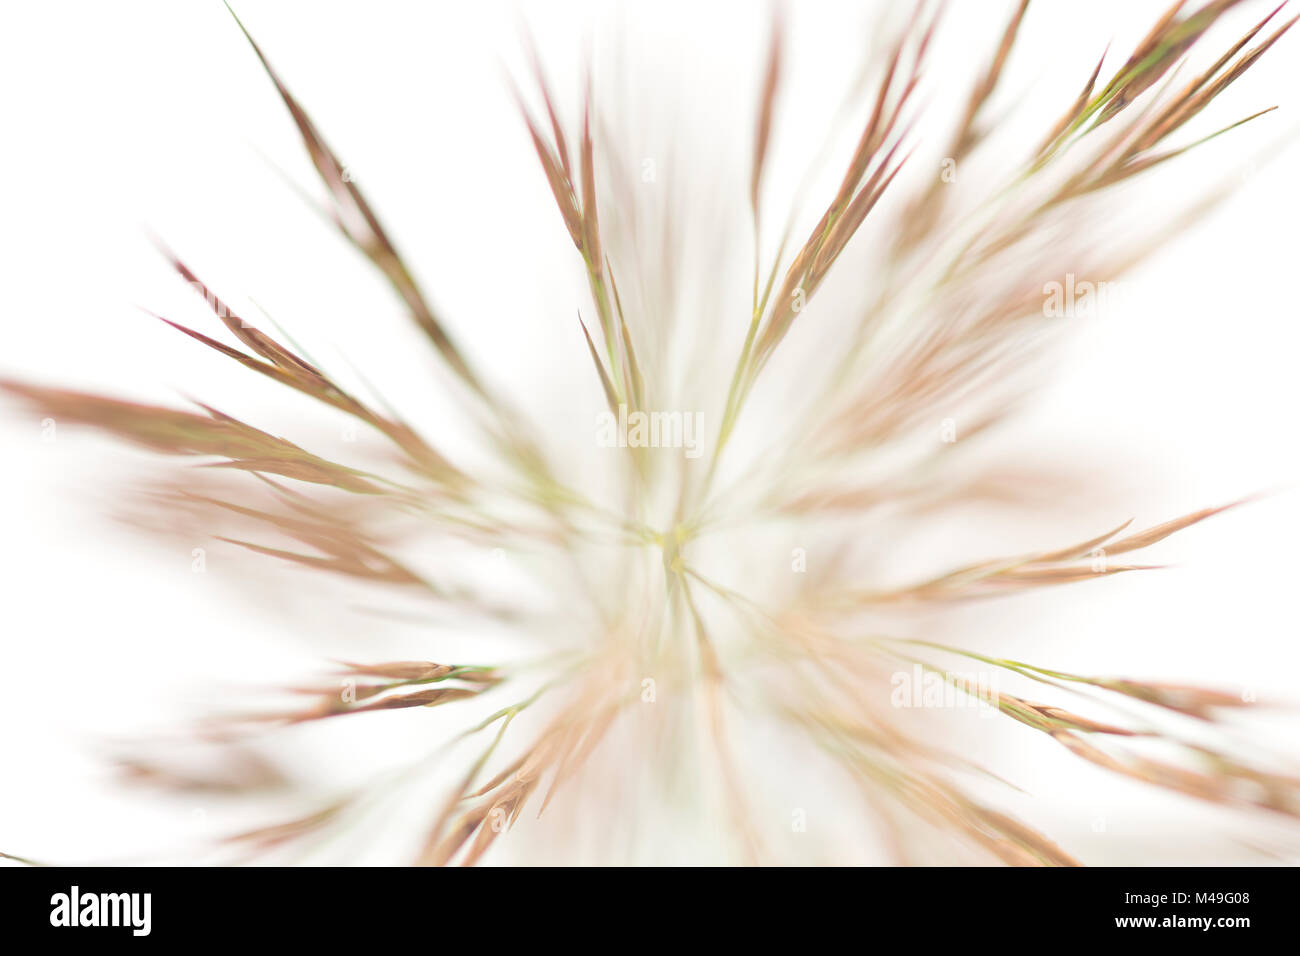 Reed (Phragmites australis) artistic shot on white background, Camargue, France Stock Photo